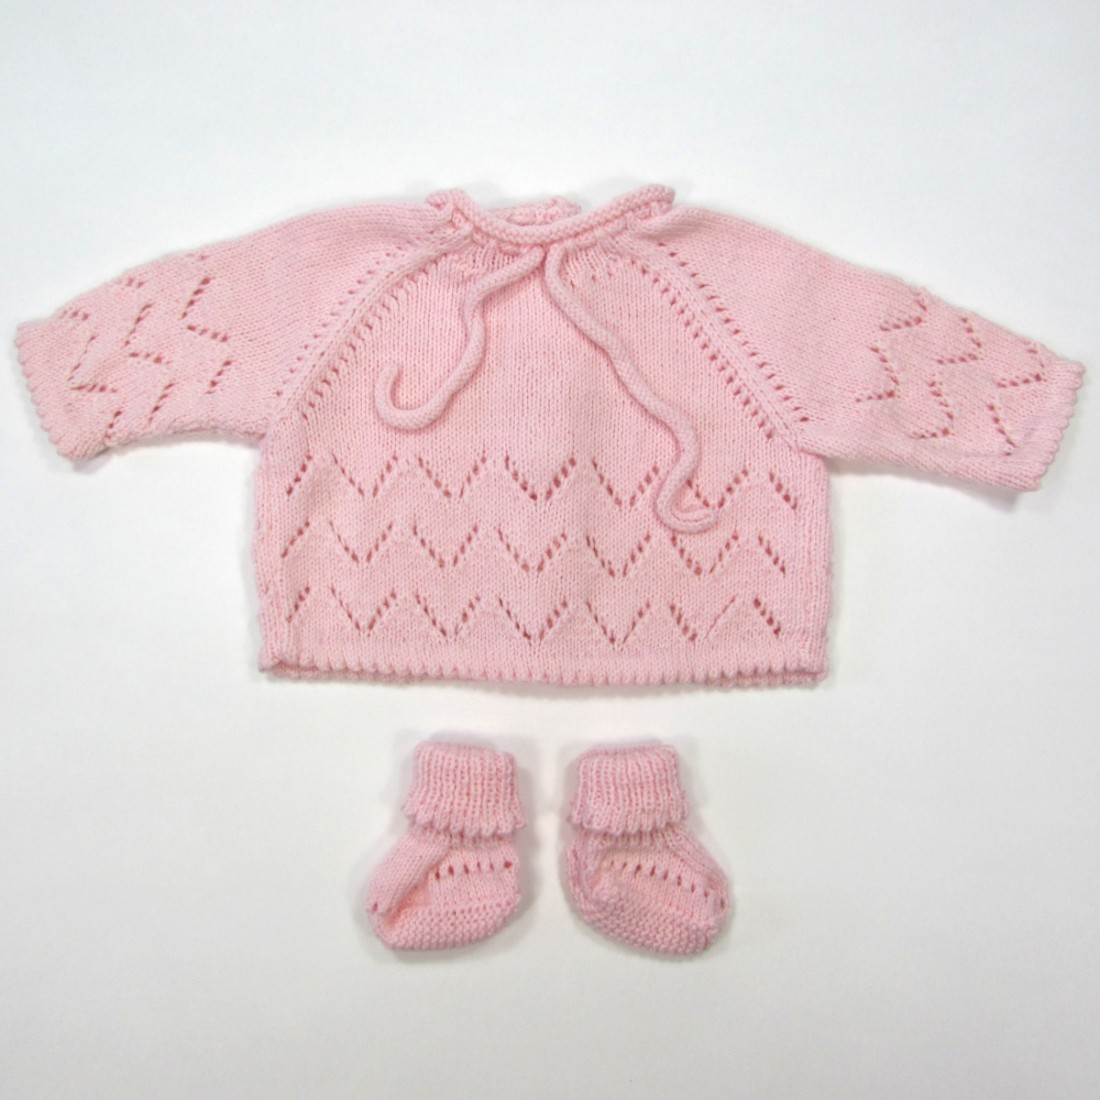 Brassière et chaussons au tricot ajouré rose dragée bébé fille 1 mois